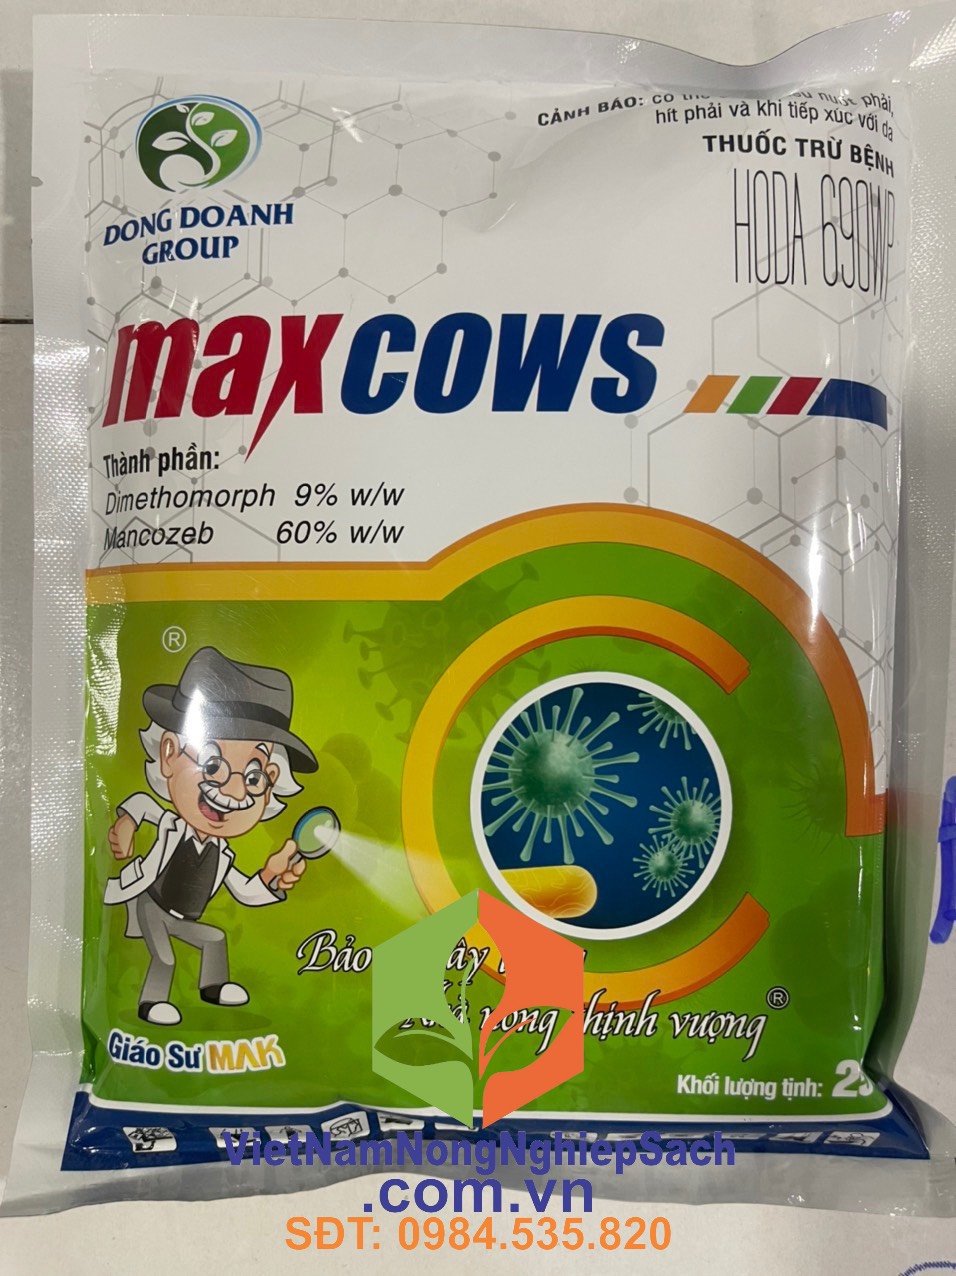 MAXCOWS